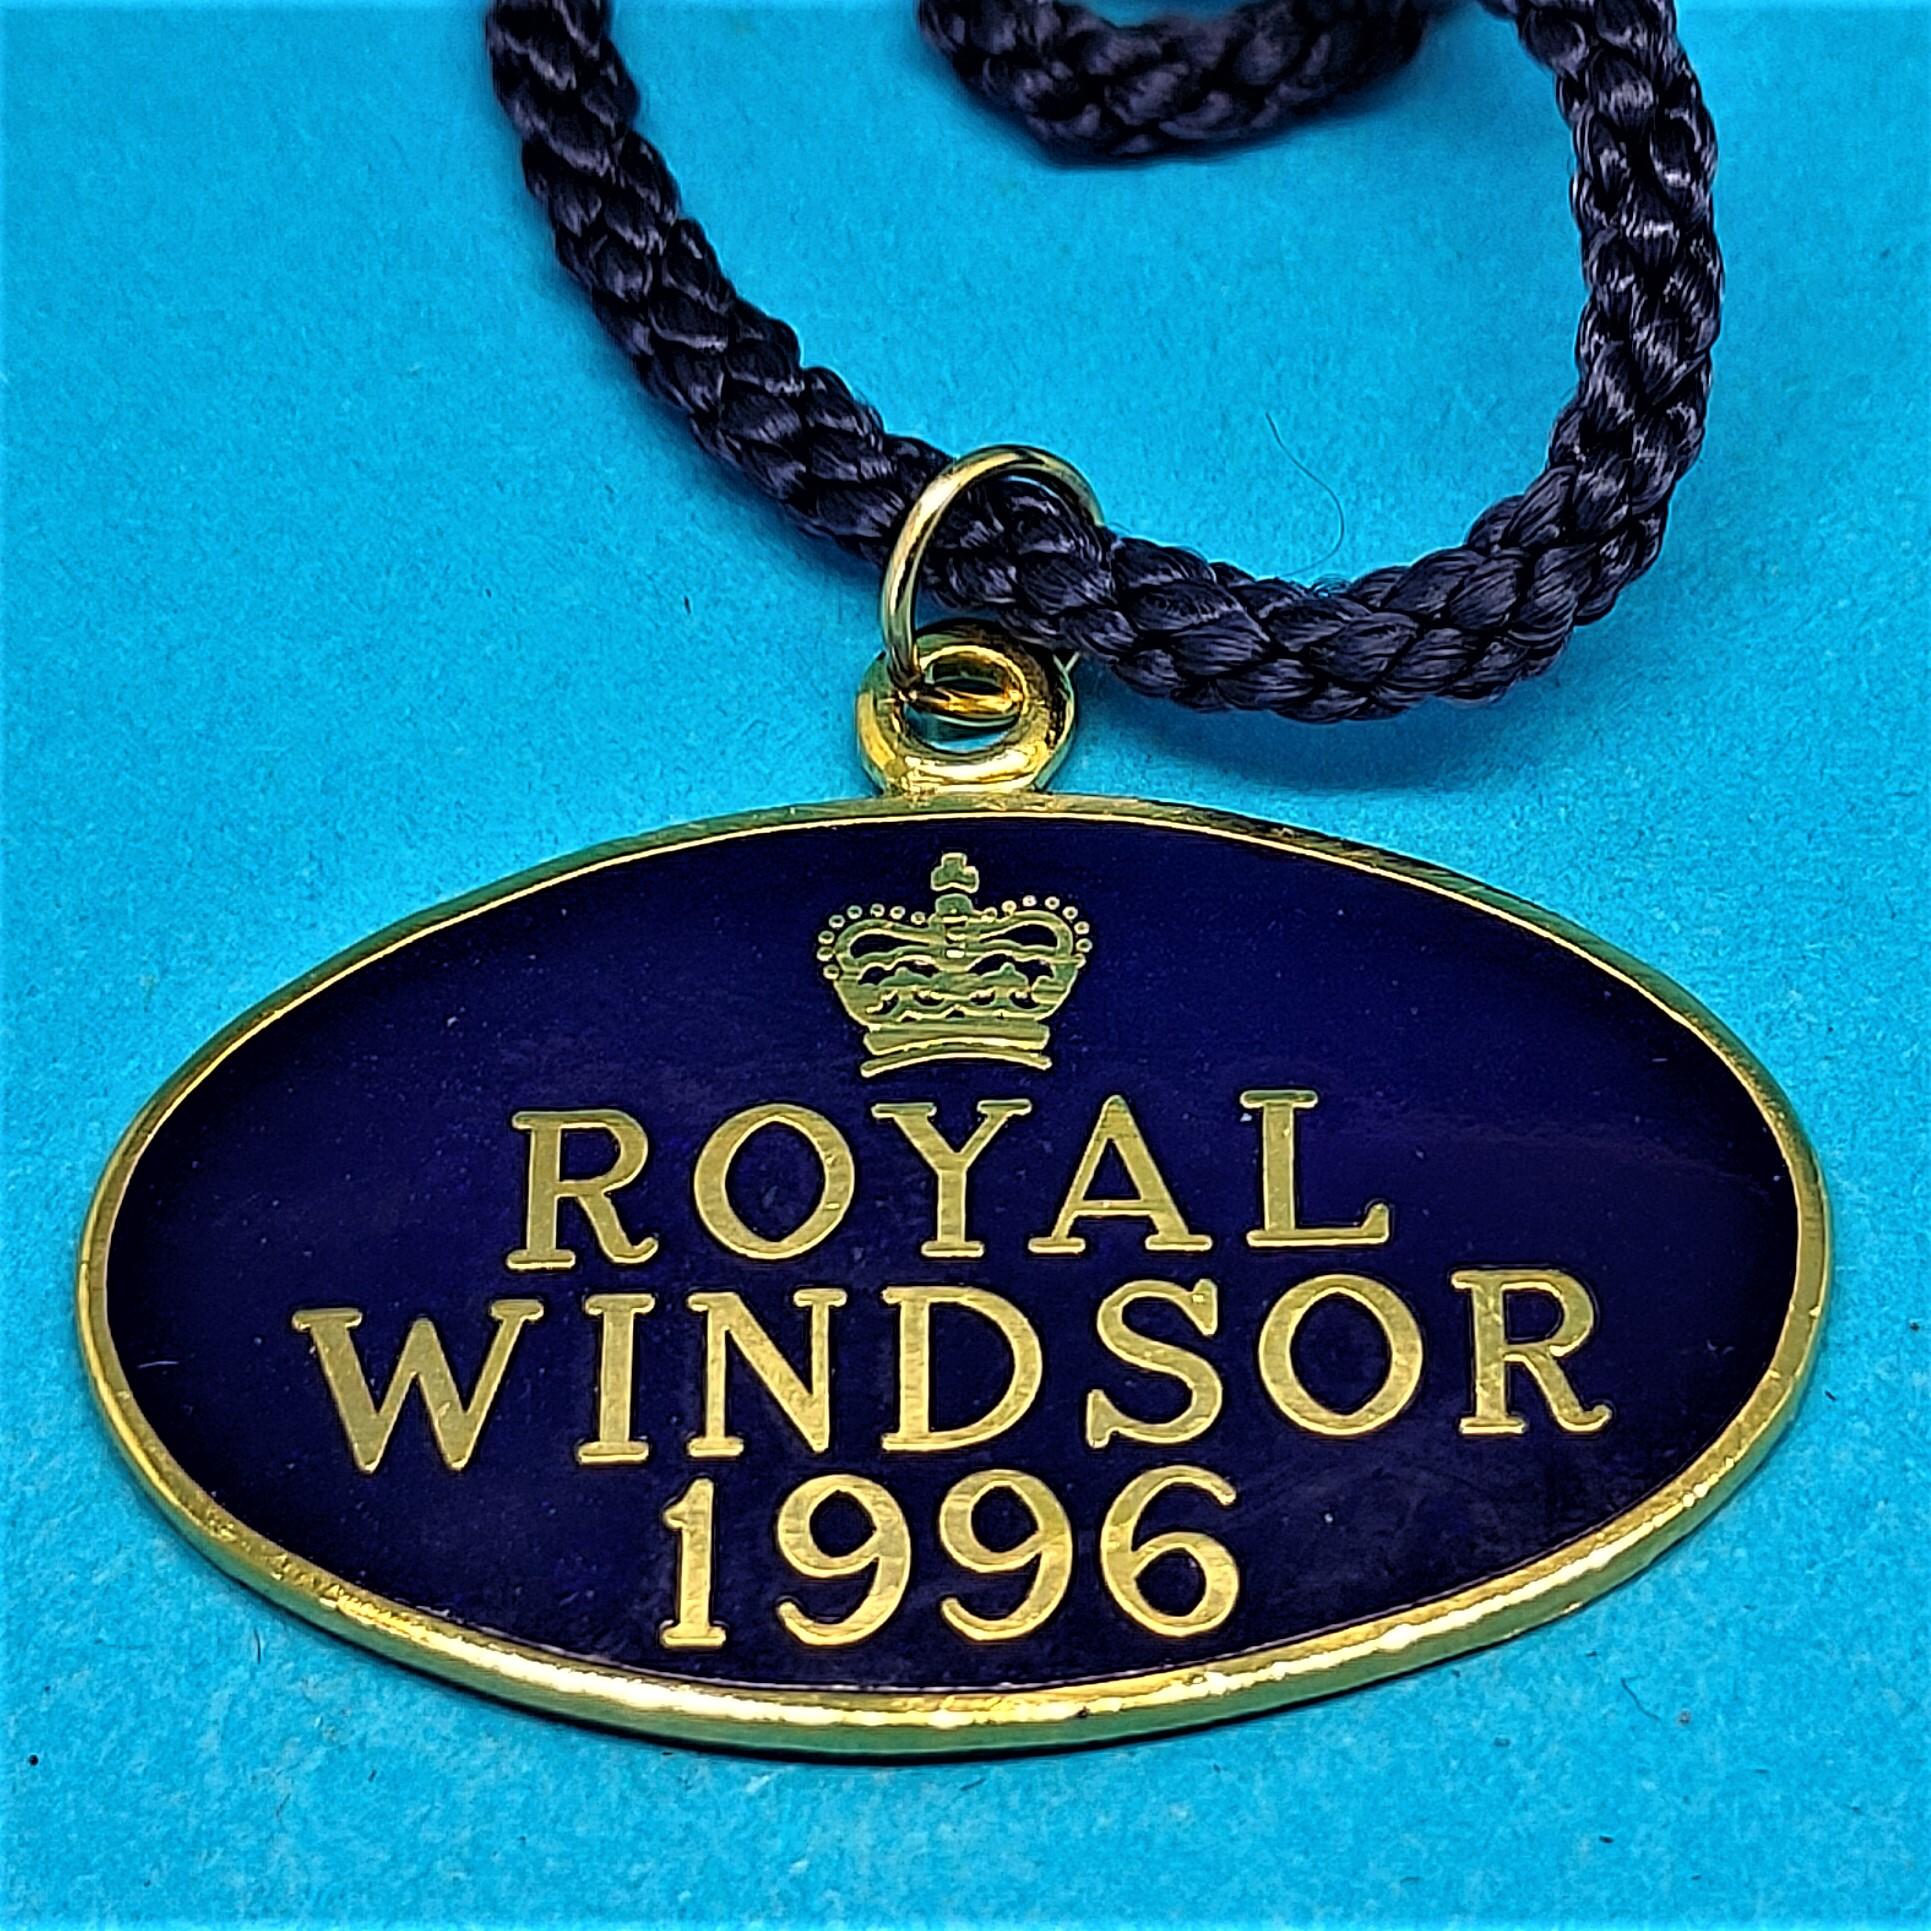 Royal Windsor 1996